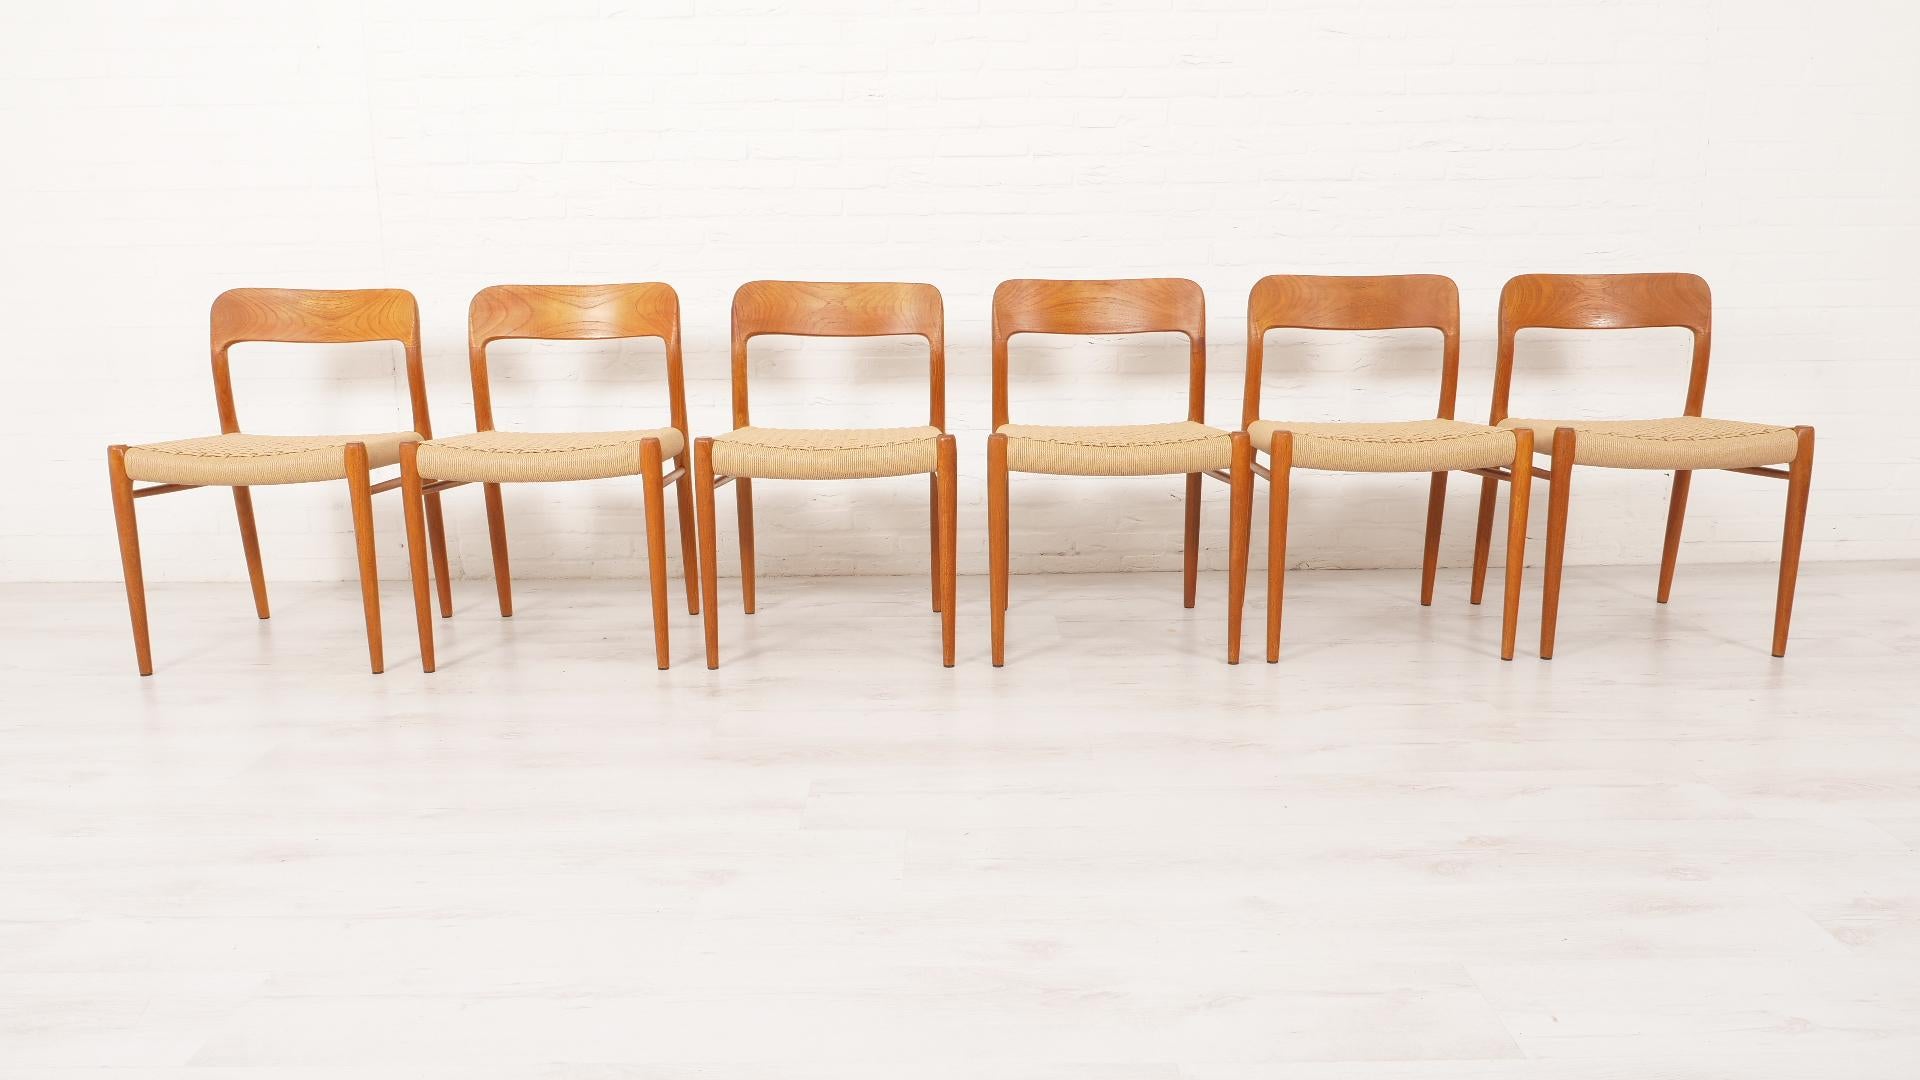 Satz von 6 schönen dänischen Vintage-Esszimmerstühlen. Diese Stühle wurden von Niels Otto Møller entworfen. Die Stühle sind aus Teakholz gefertigt und mit neuen Papierkordeln ausgestattet.

Zeitraum des Designs: 1950 - 1960
Stil: Moderne Mitte des